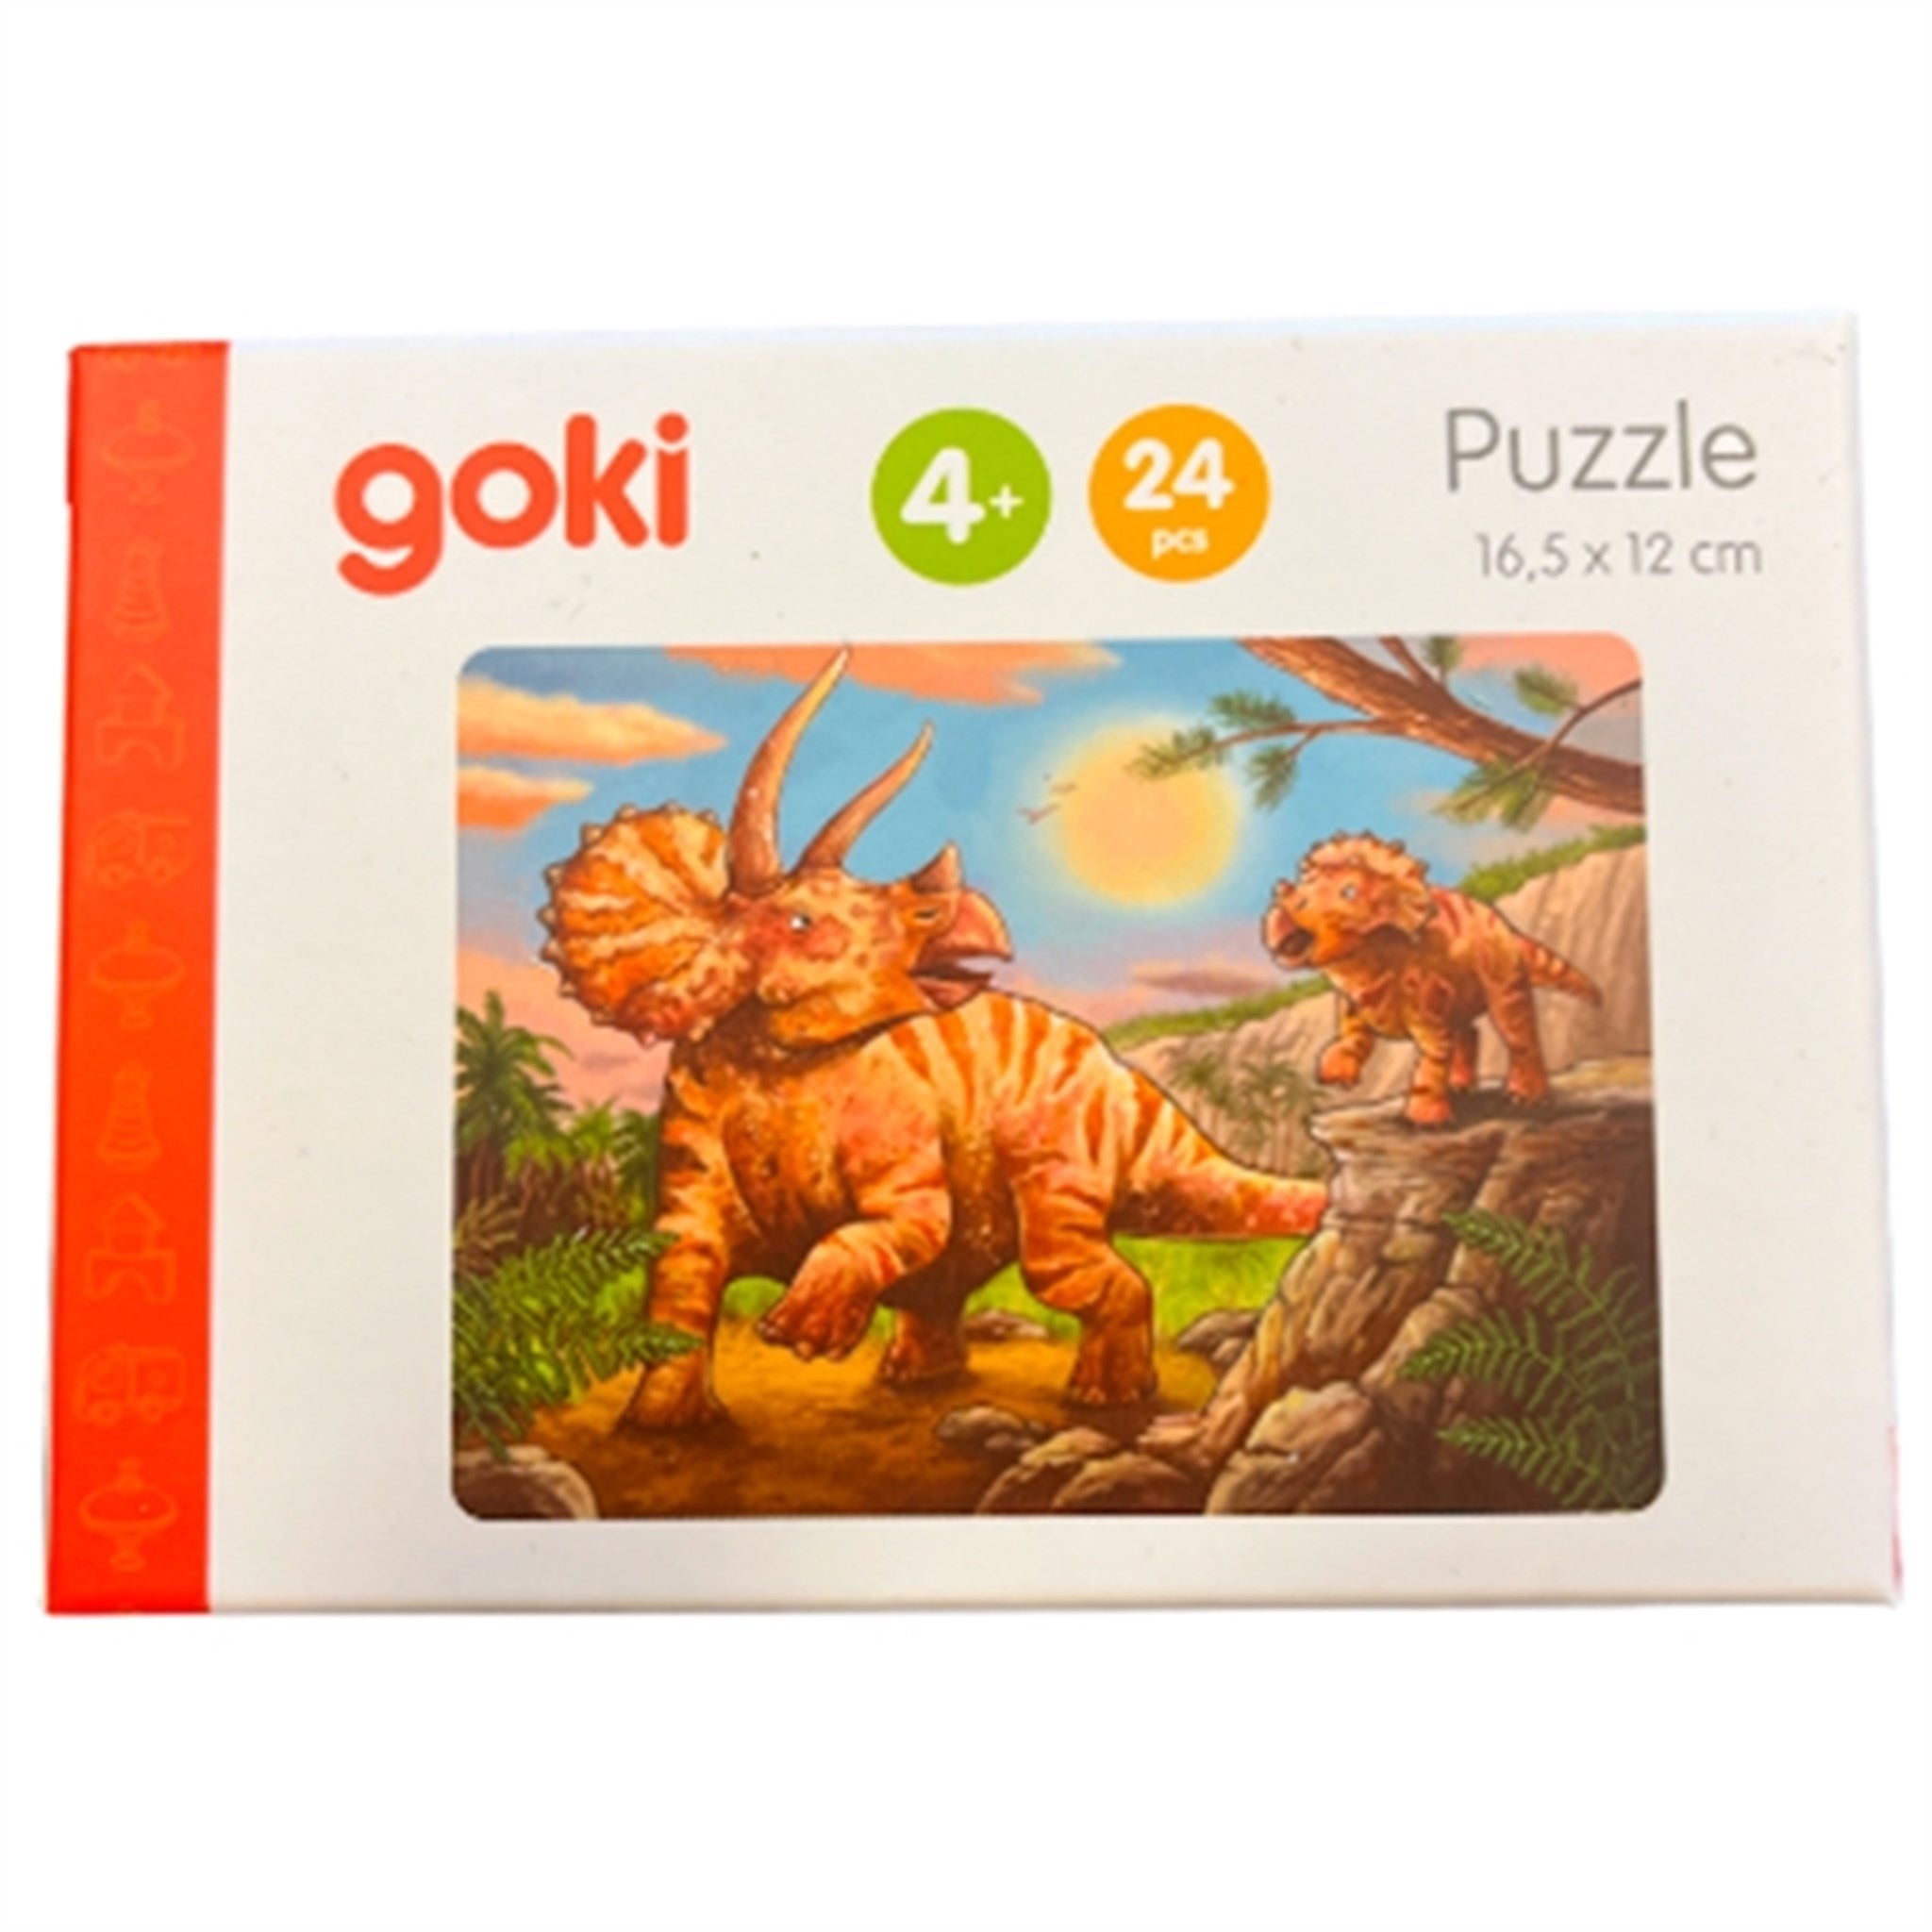 Goki Puzzle Mini - Dinosaur 5